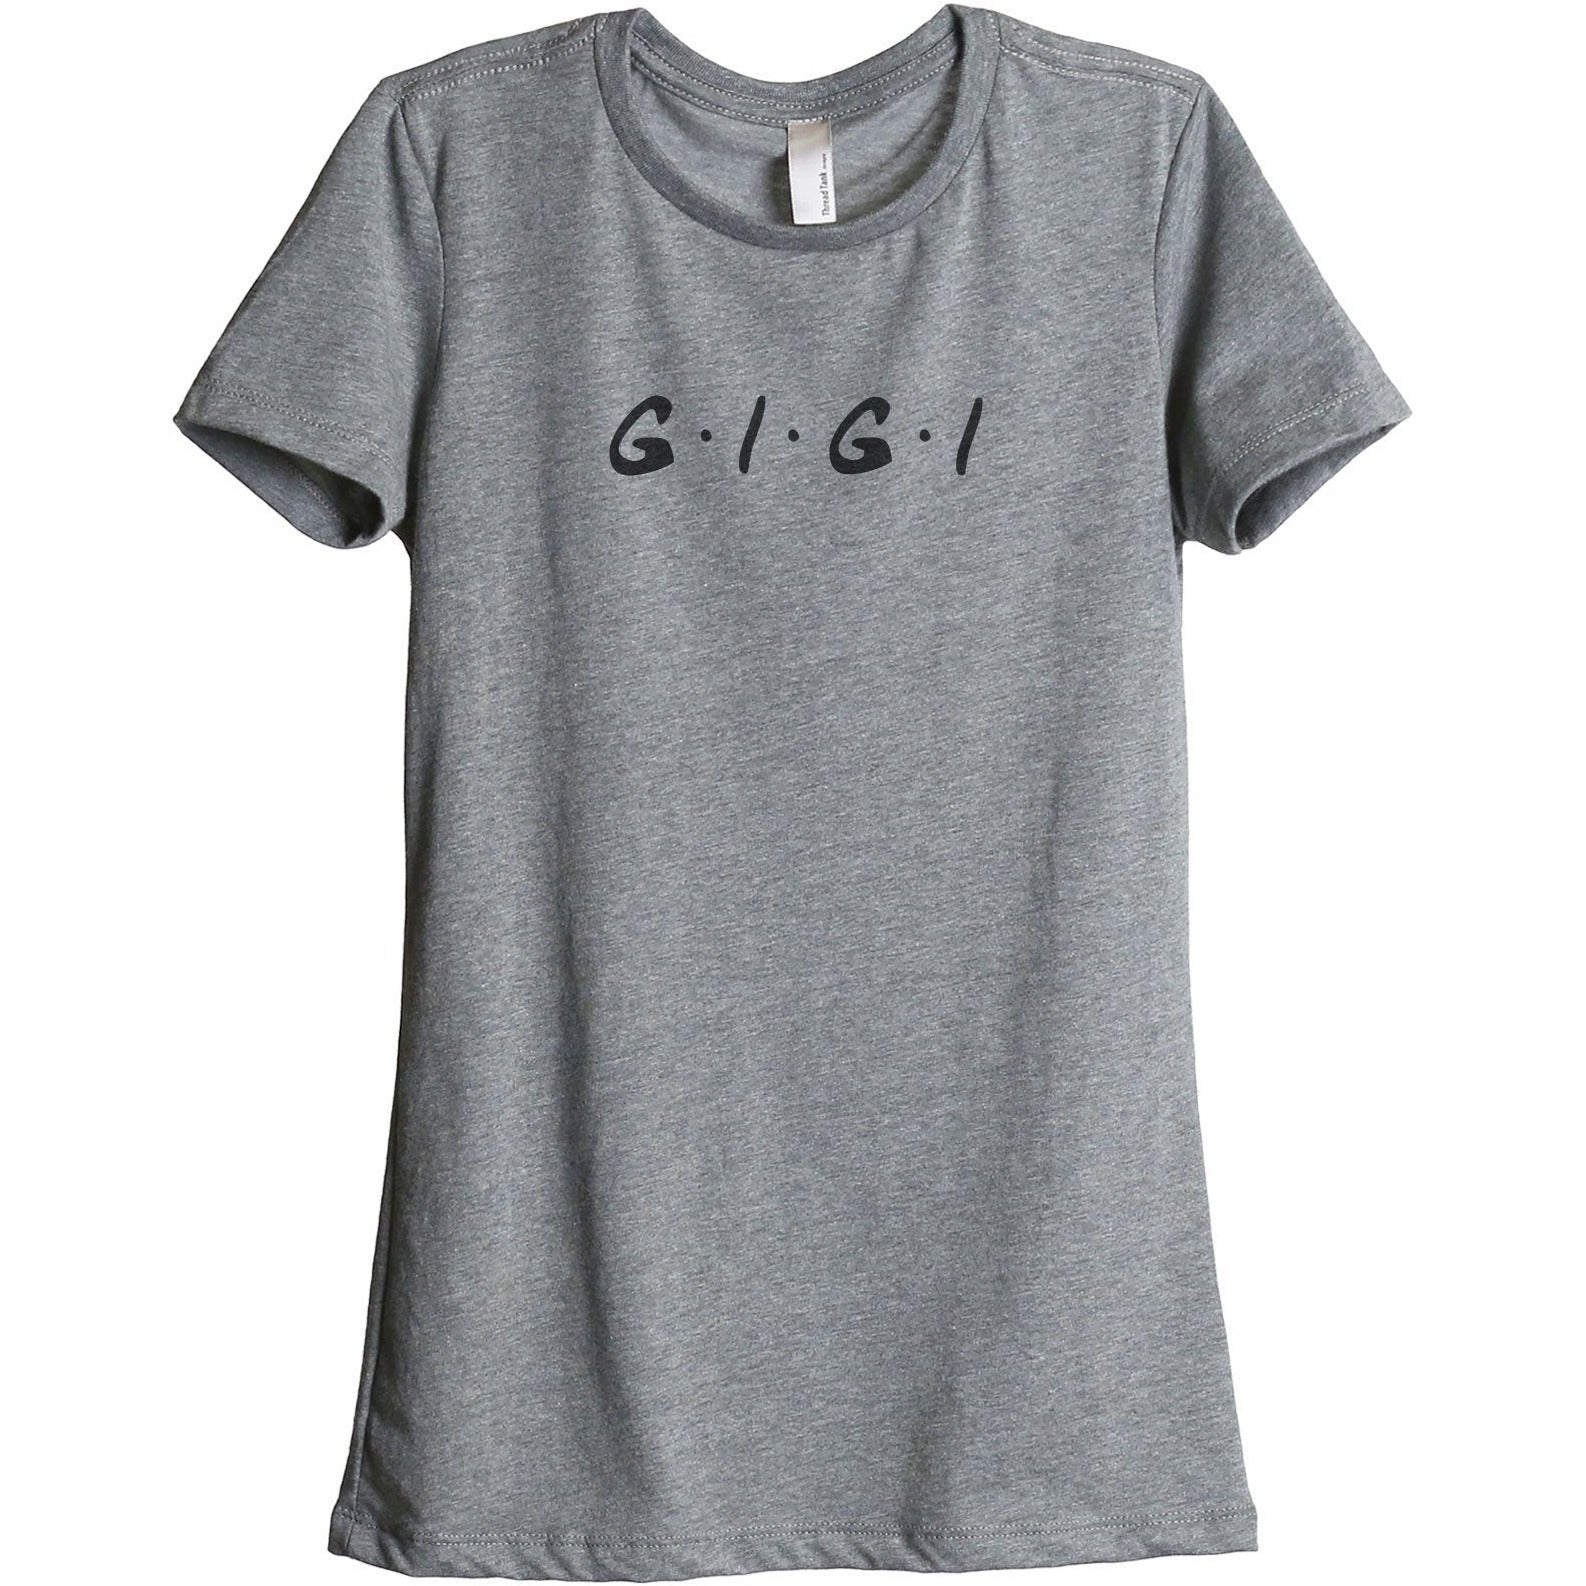 Gigi Friends Women's Relaxed Crewneck T-Shirt Top Tee Heather Grey